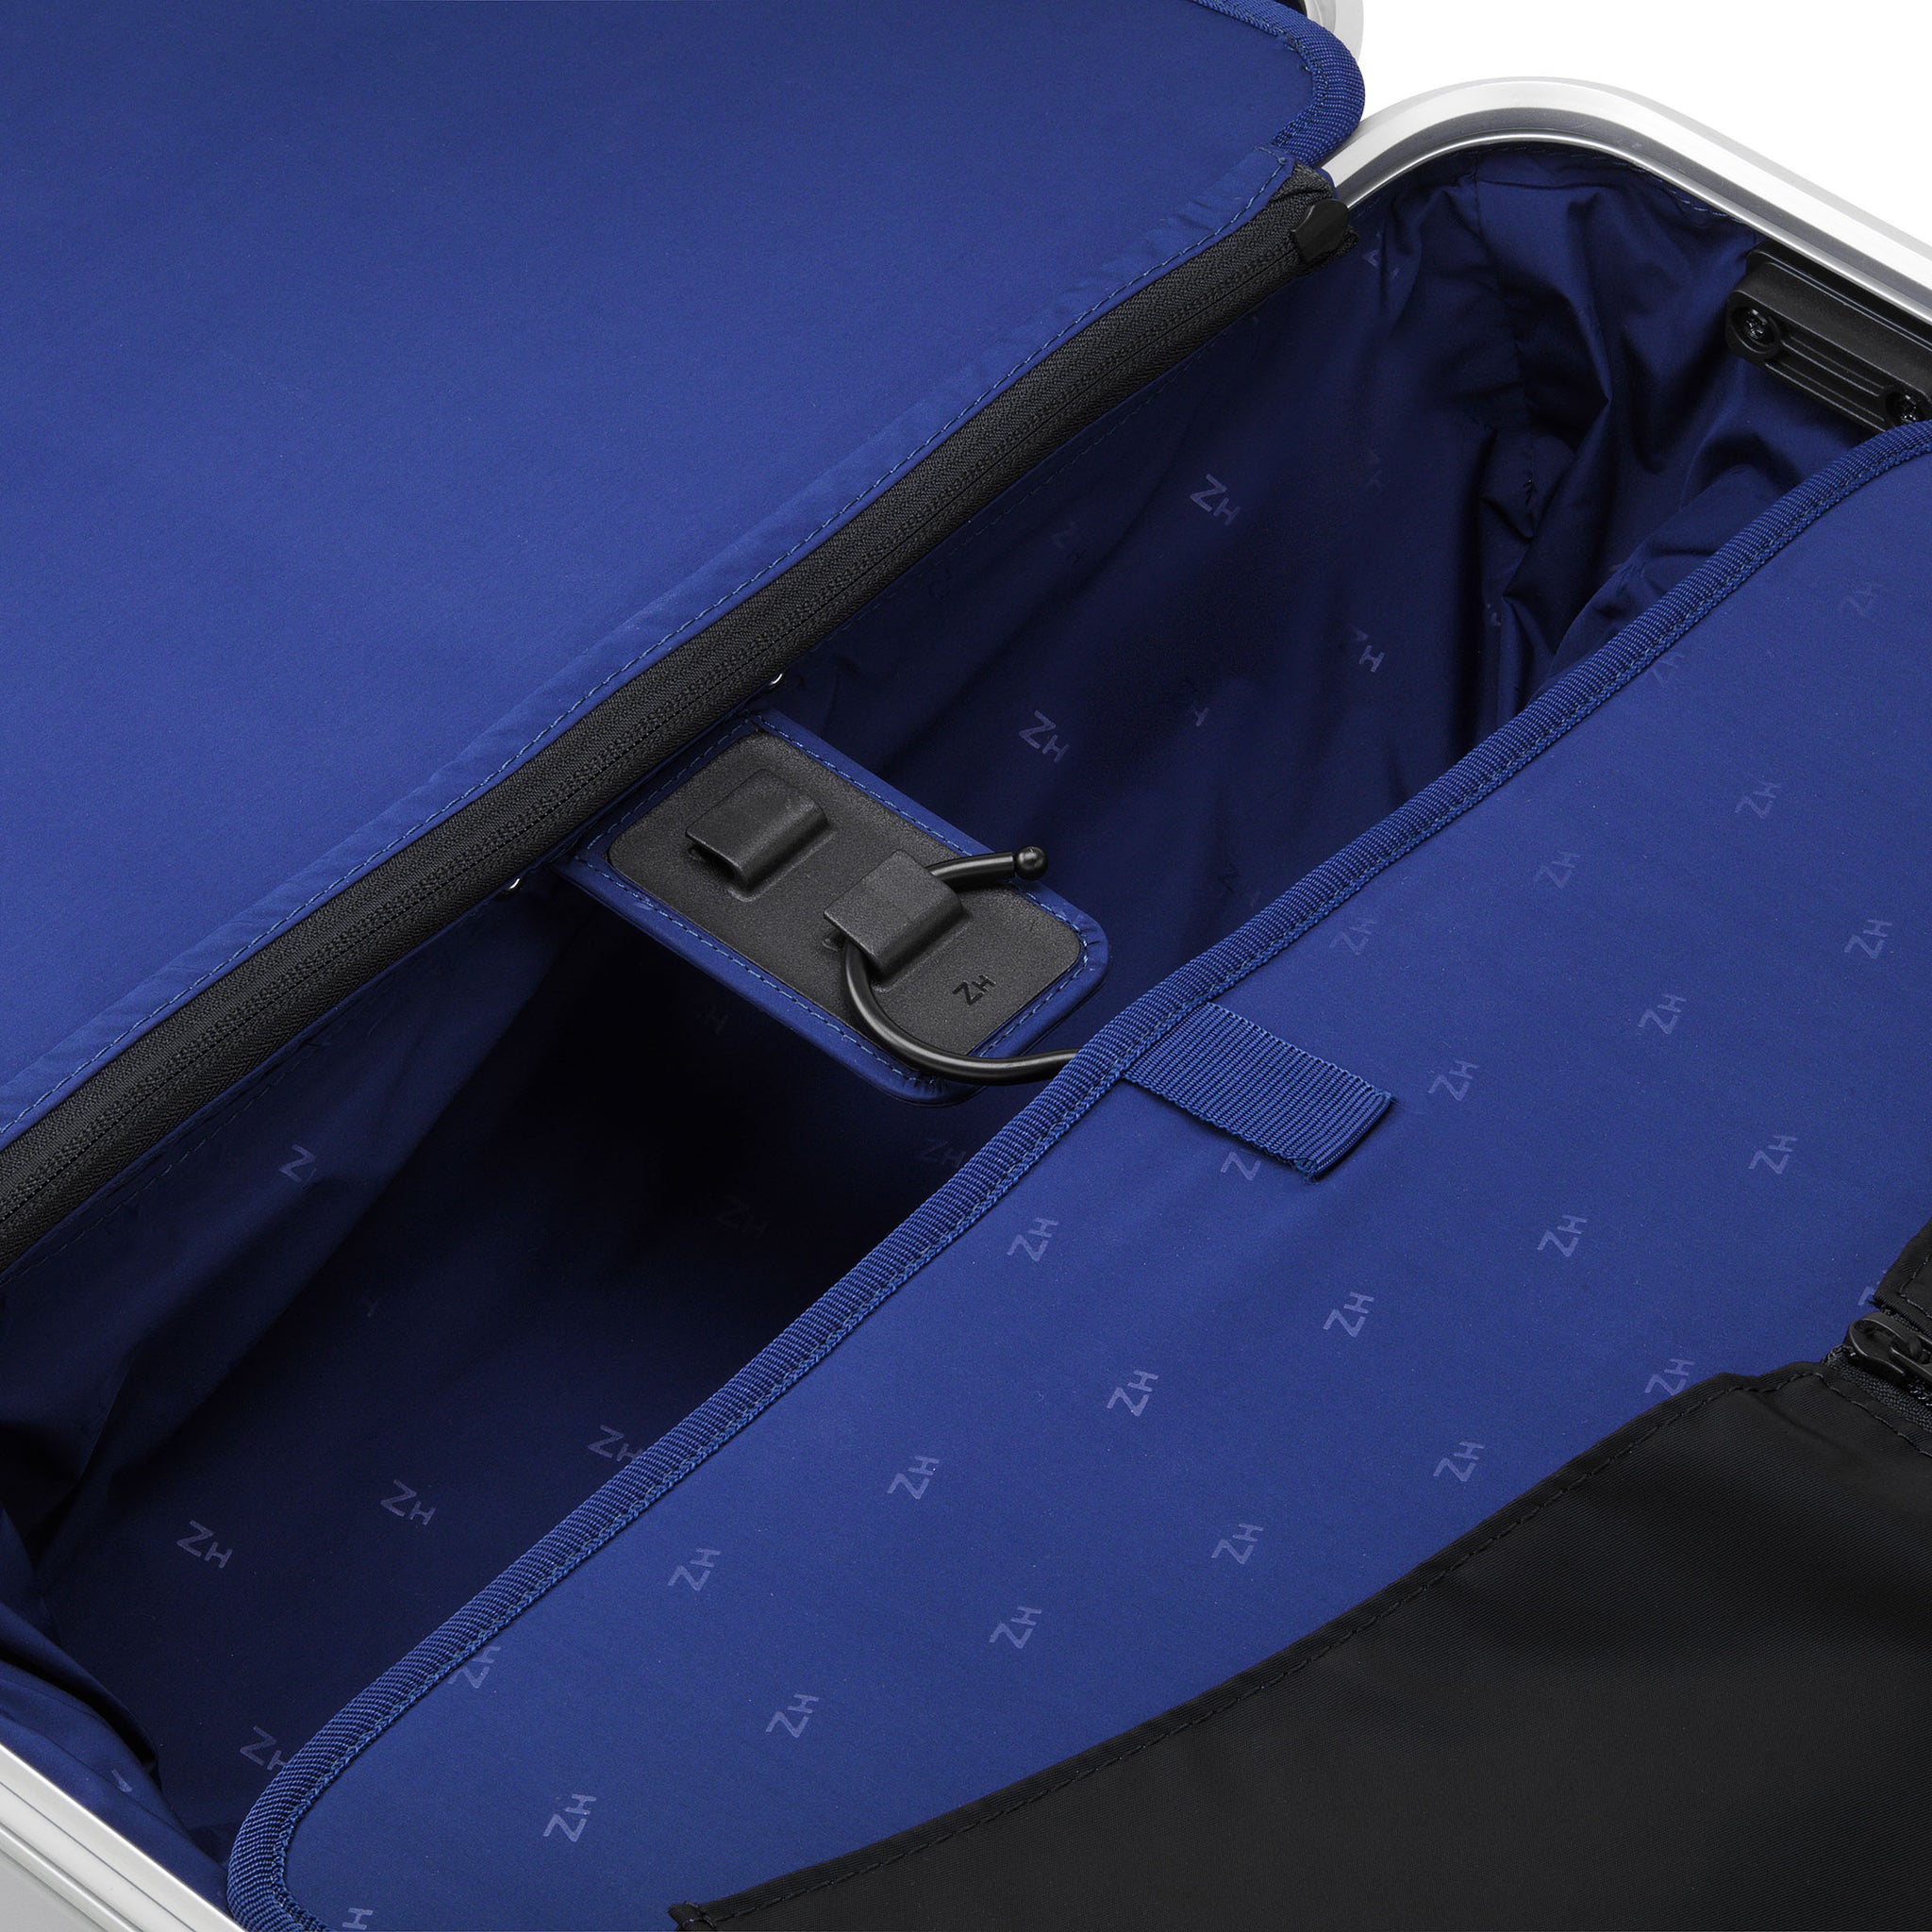 Zero Halliburton Accessories | Gen ZH Luggage Cover Continental - WS